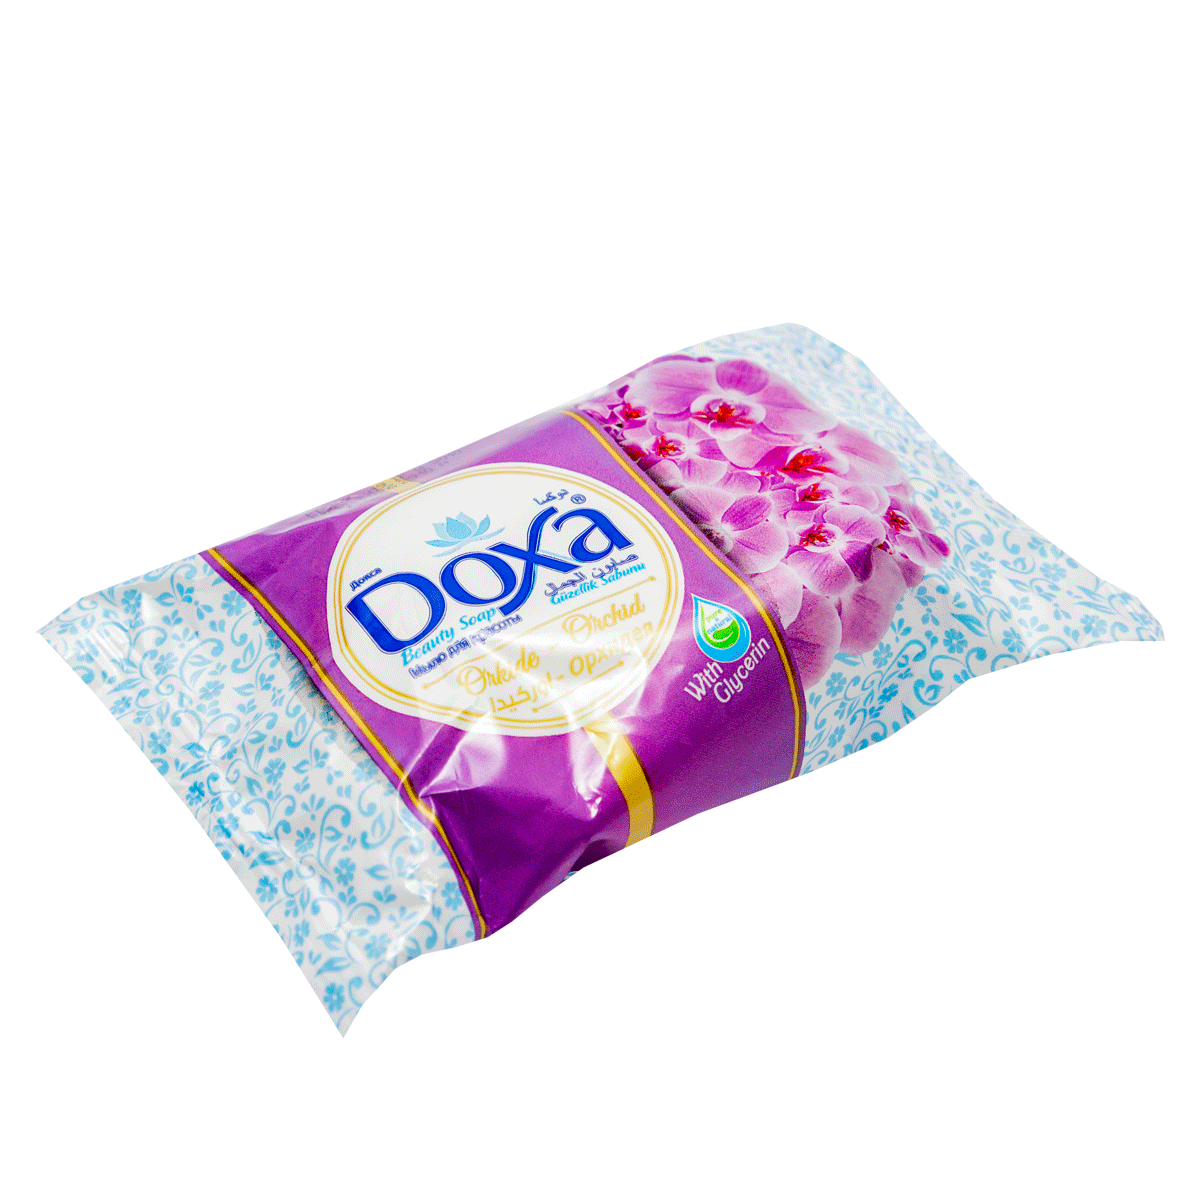 Soap Doxa 